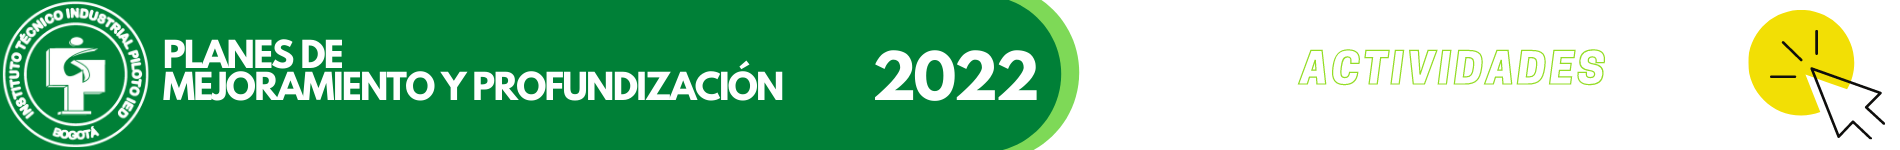 BANNER PLANES DE MEJORAMIENTO 2022